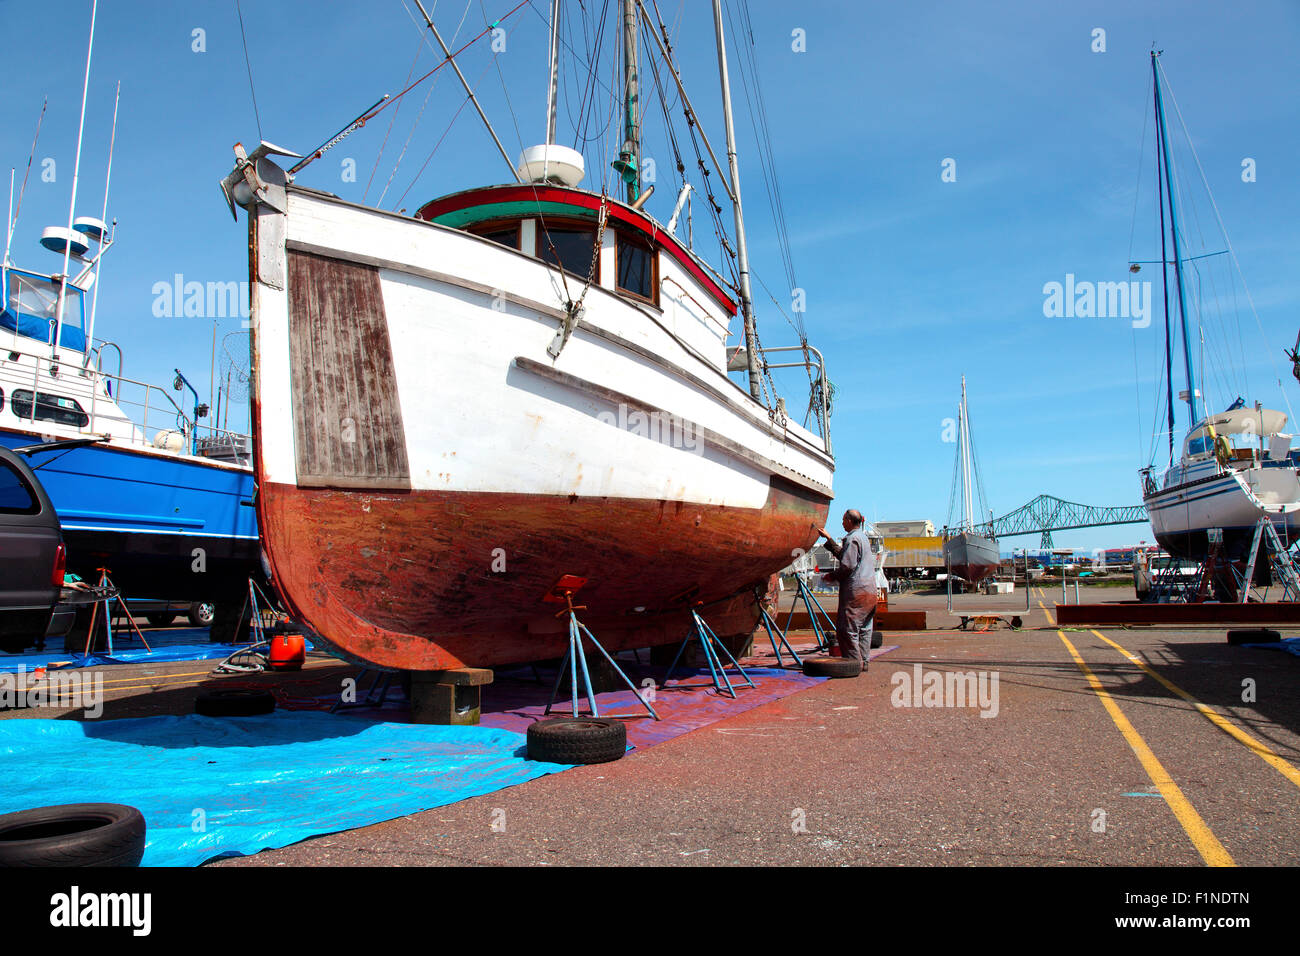 Le bateau est prêt pour le travail de réparation et d'entretien, Astoria dans l'Oregon. Banque D'Images